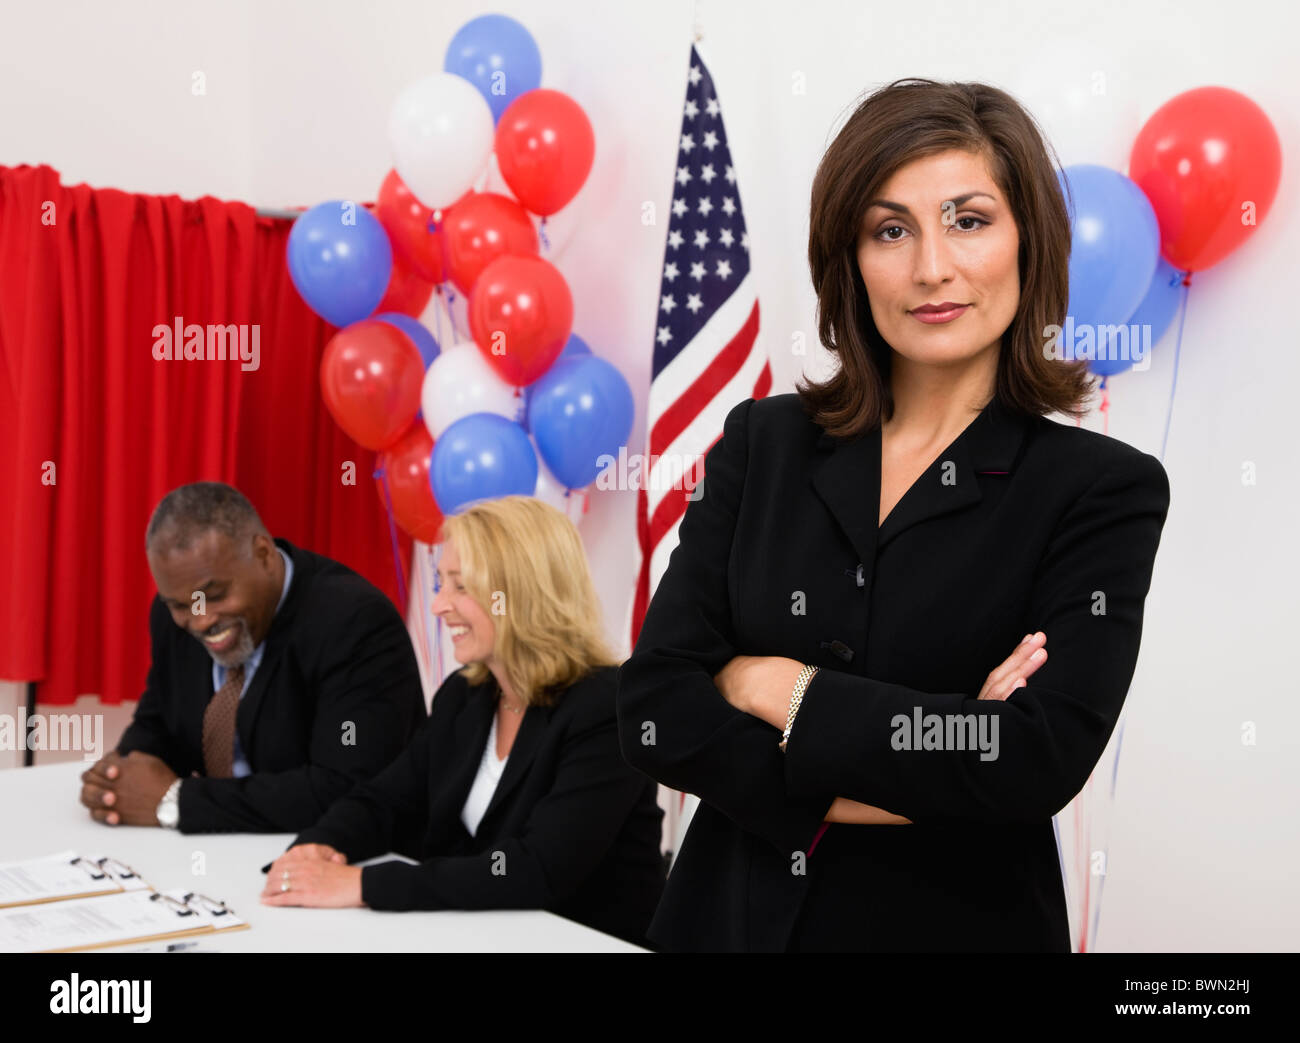 Porträt der Frau auf Abruf, Metamora, Illinois, USA platzieren, US-Flagge, Luftballons und Wahlkabine im Hintergrund Stockfoto